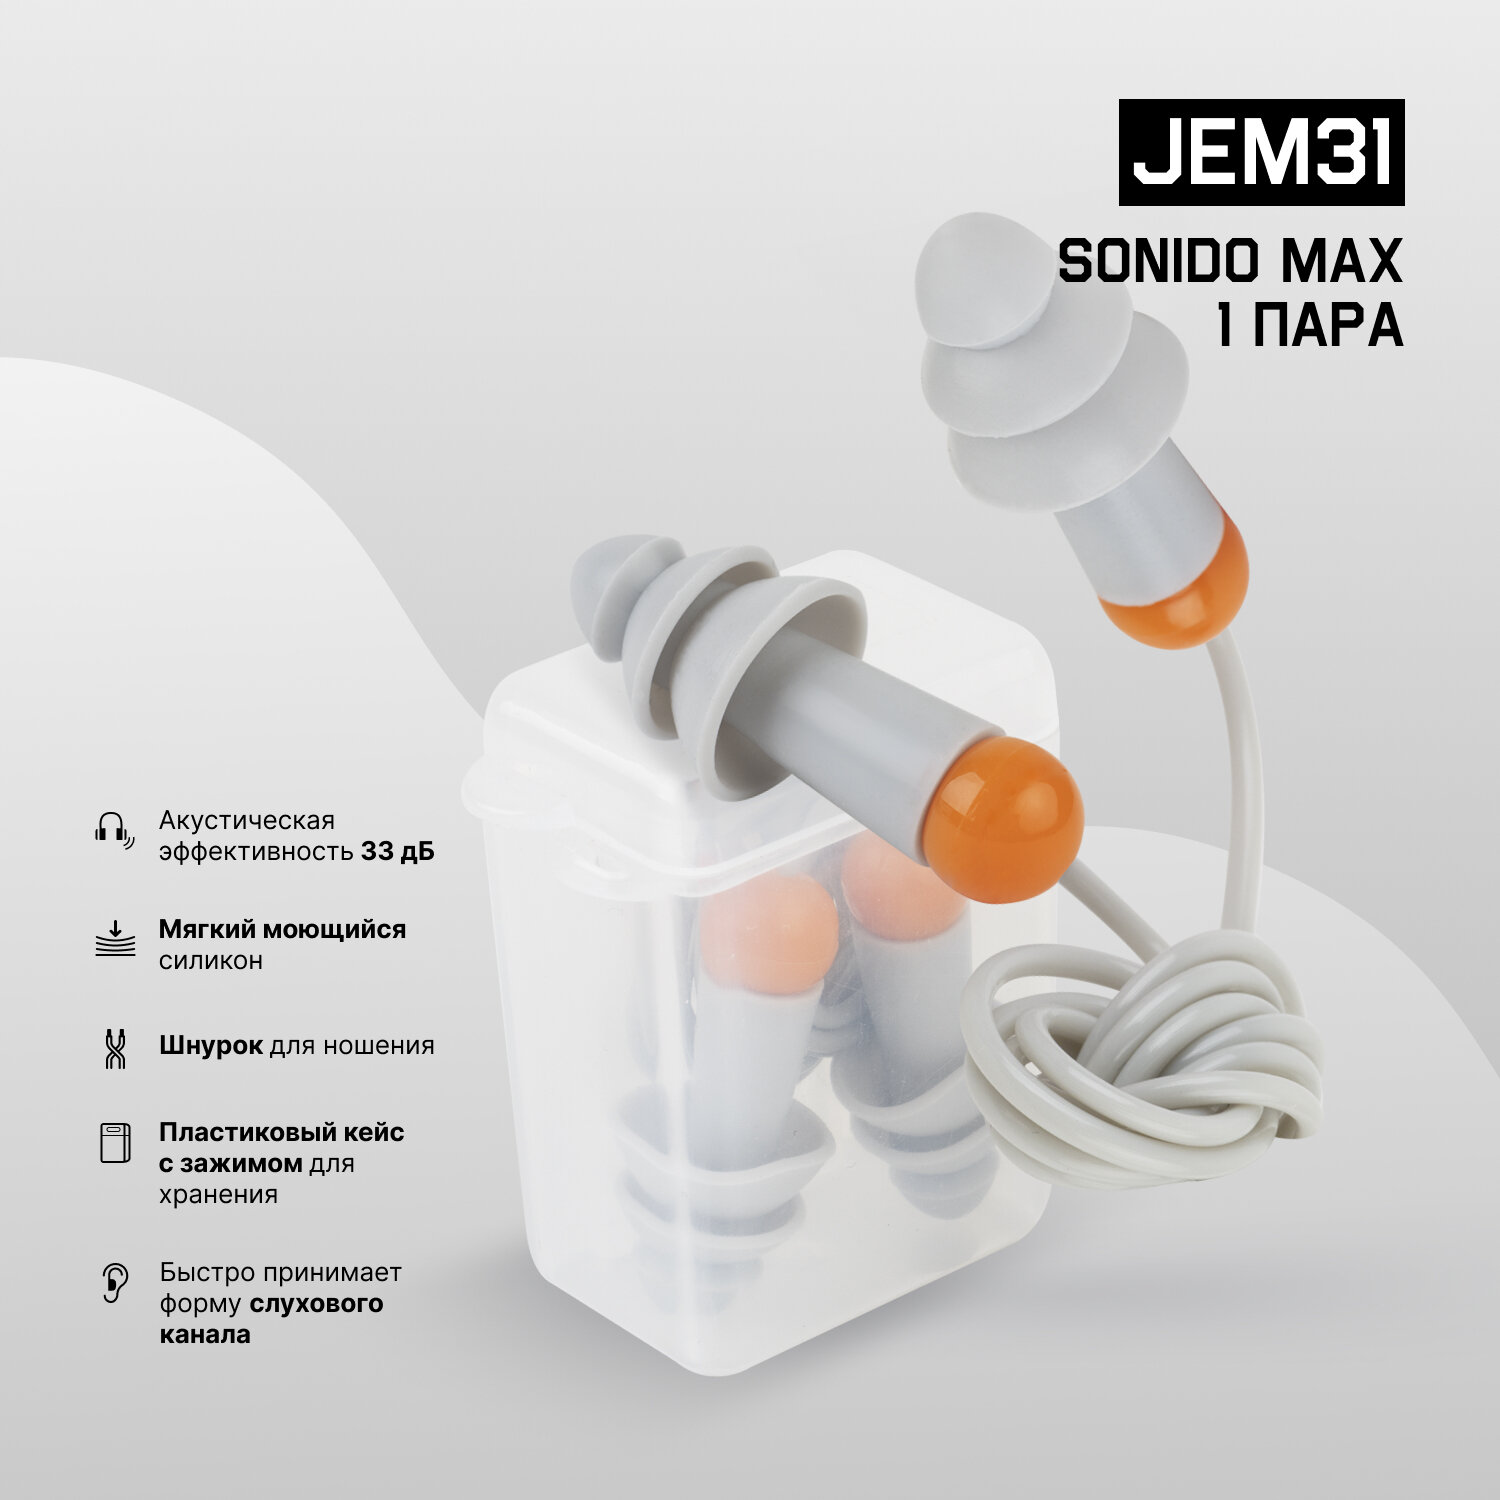 Противошумные многоразовые силиконовые беруши JEM31 Sonido Max на шнурке в пластиковом боксе, акустическая эффективность 33 дБ